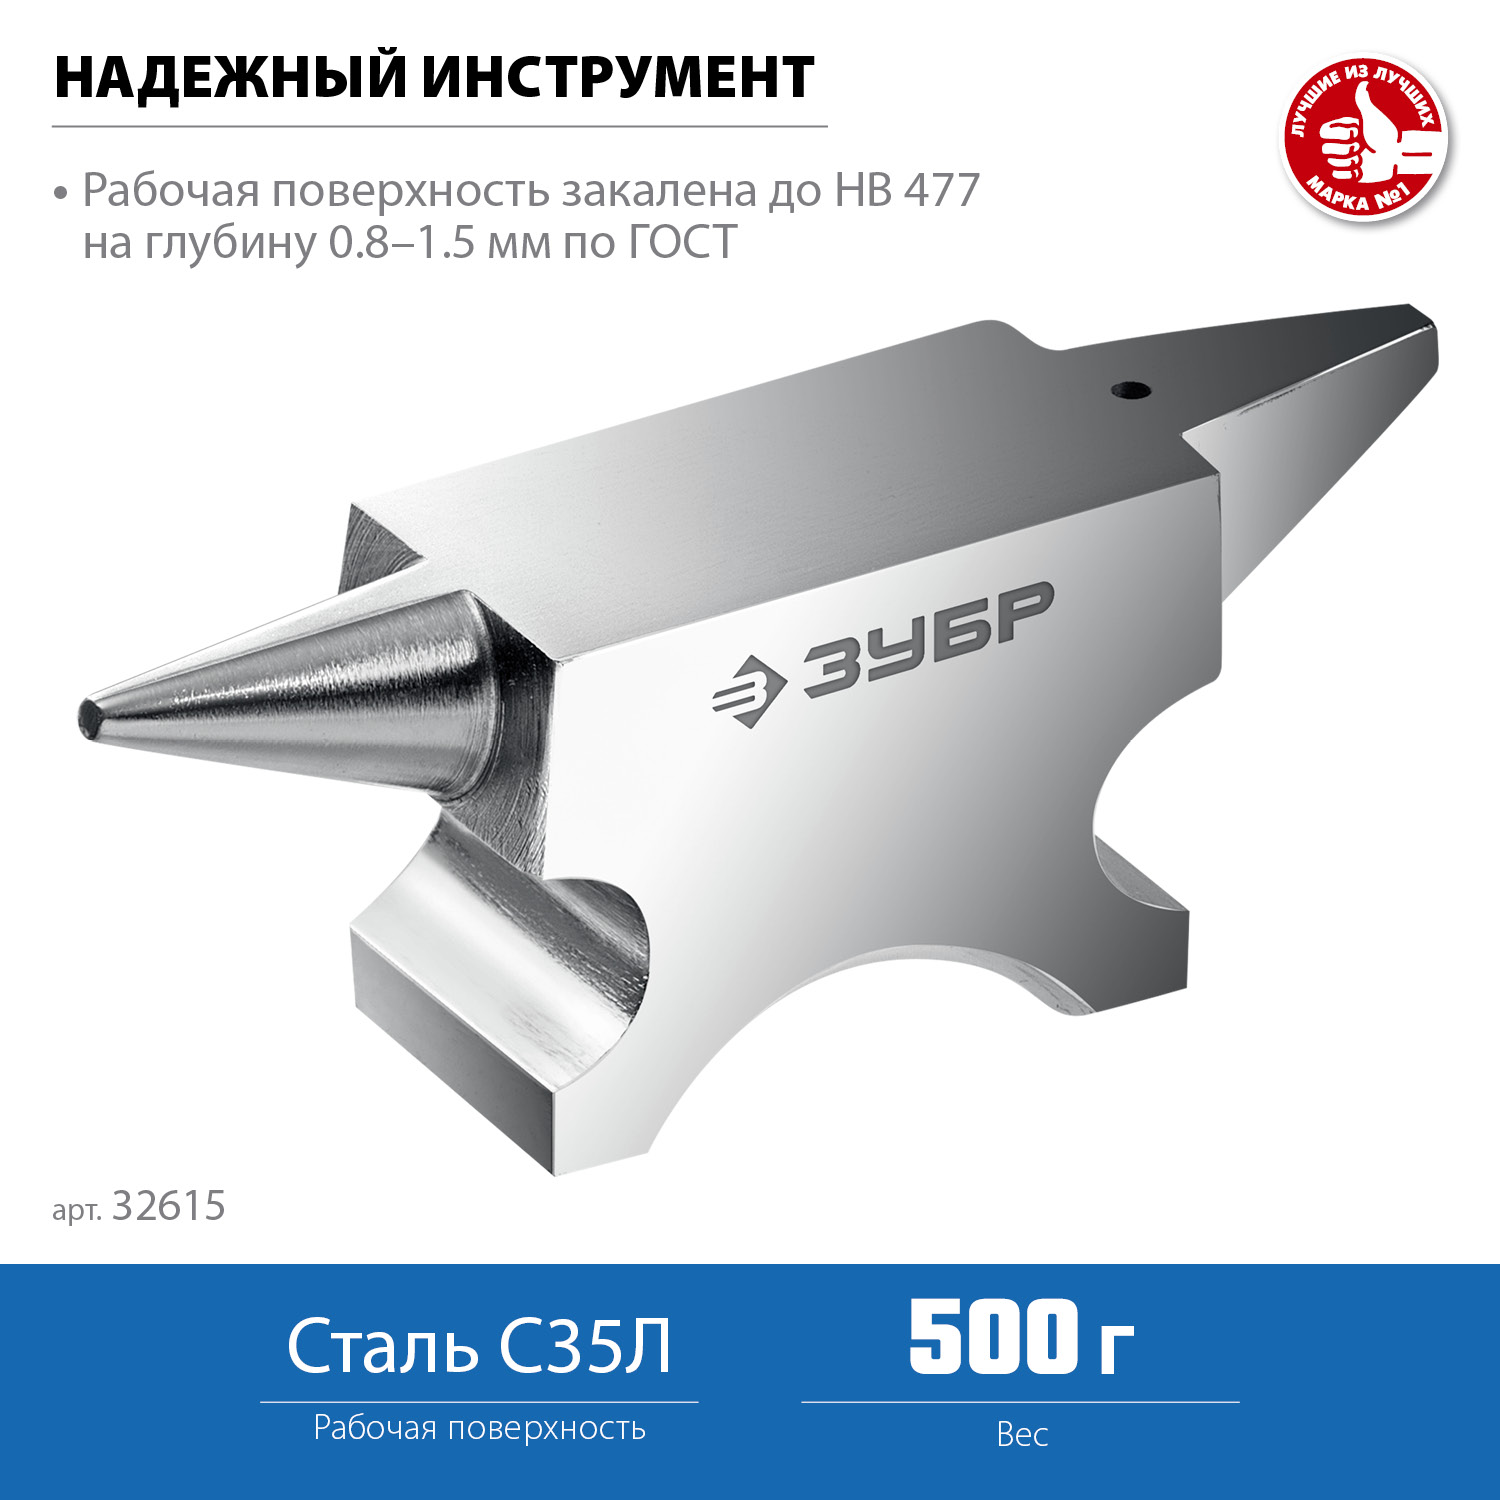 ЗУБР 500 г, ювелирная стальная наковальня, Профессионал (32615)